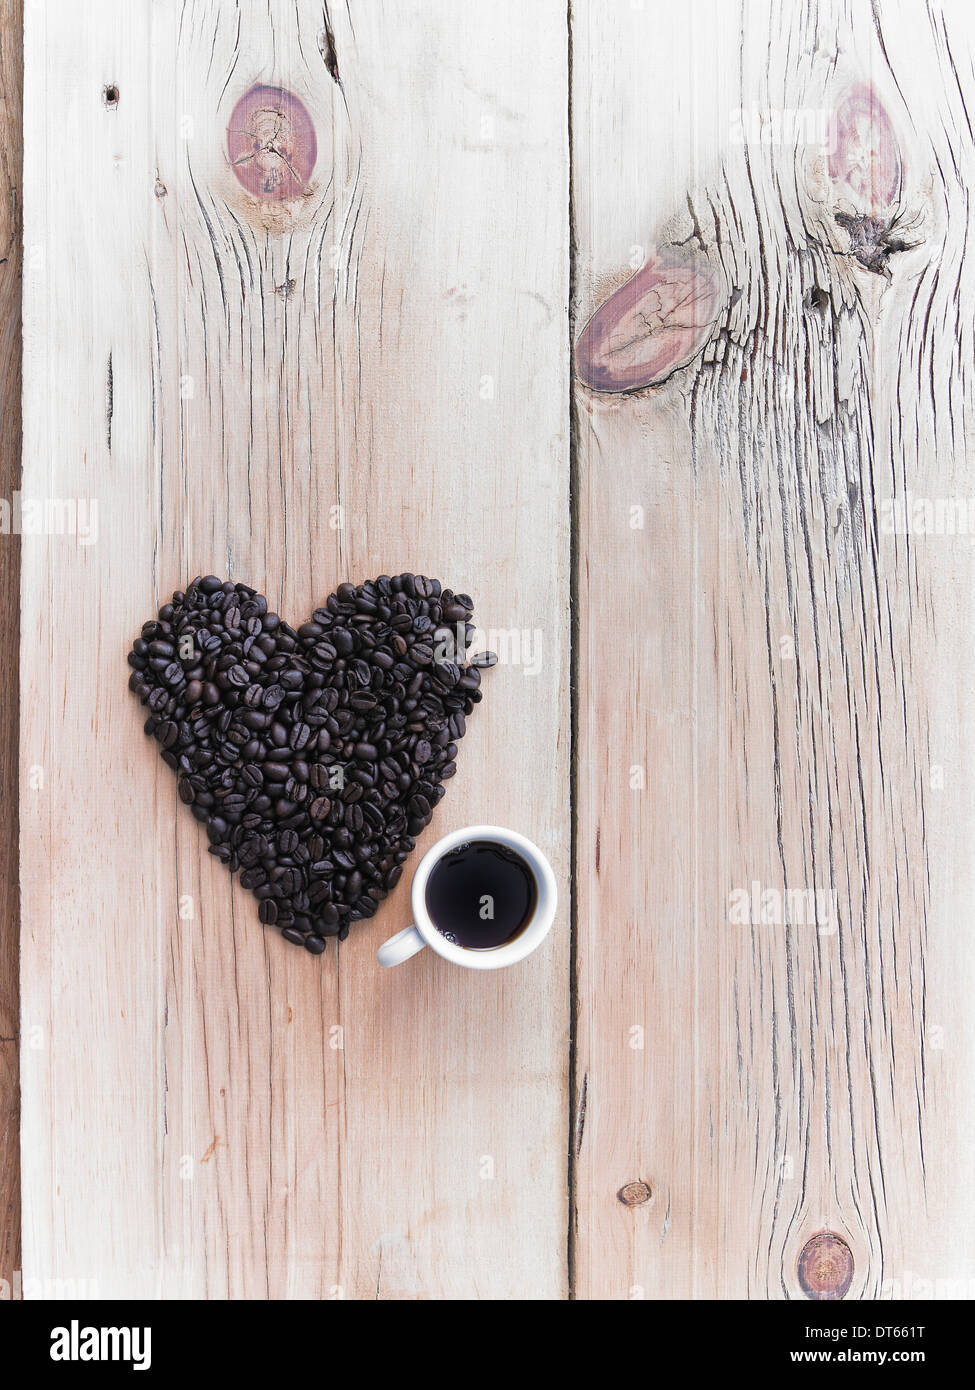 Vue de dessus d'un tas de grains de café biologiques rôties en forme de coeur, disposés sur une table. Une tasse de café noir. Banque D'Images